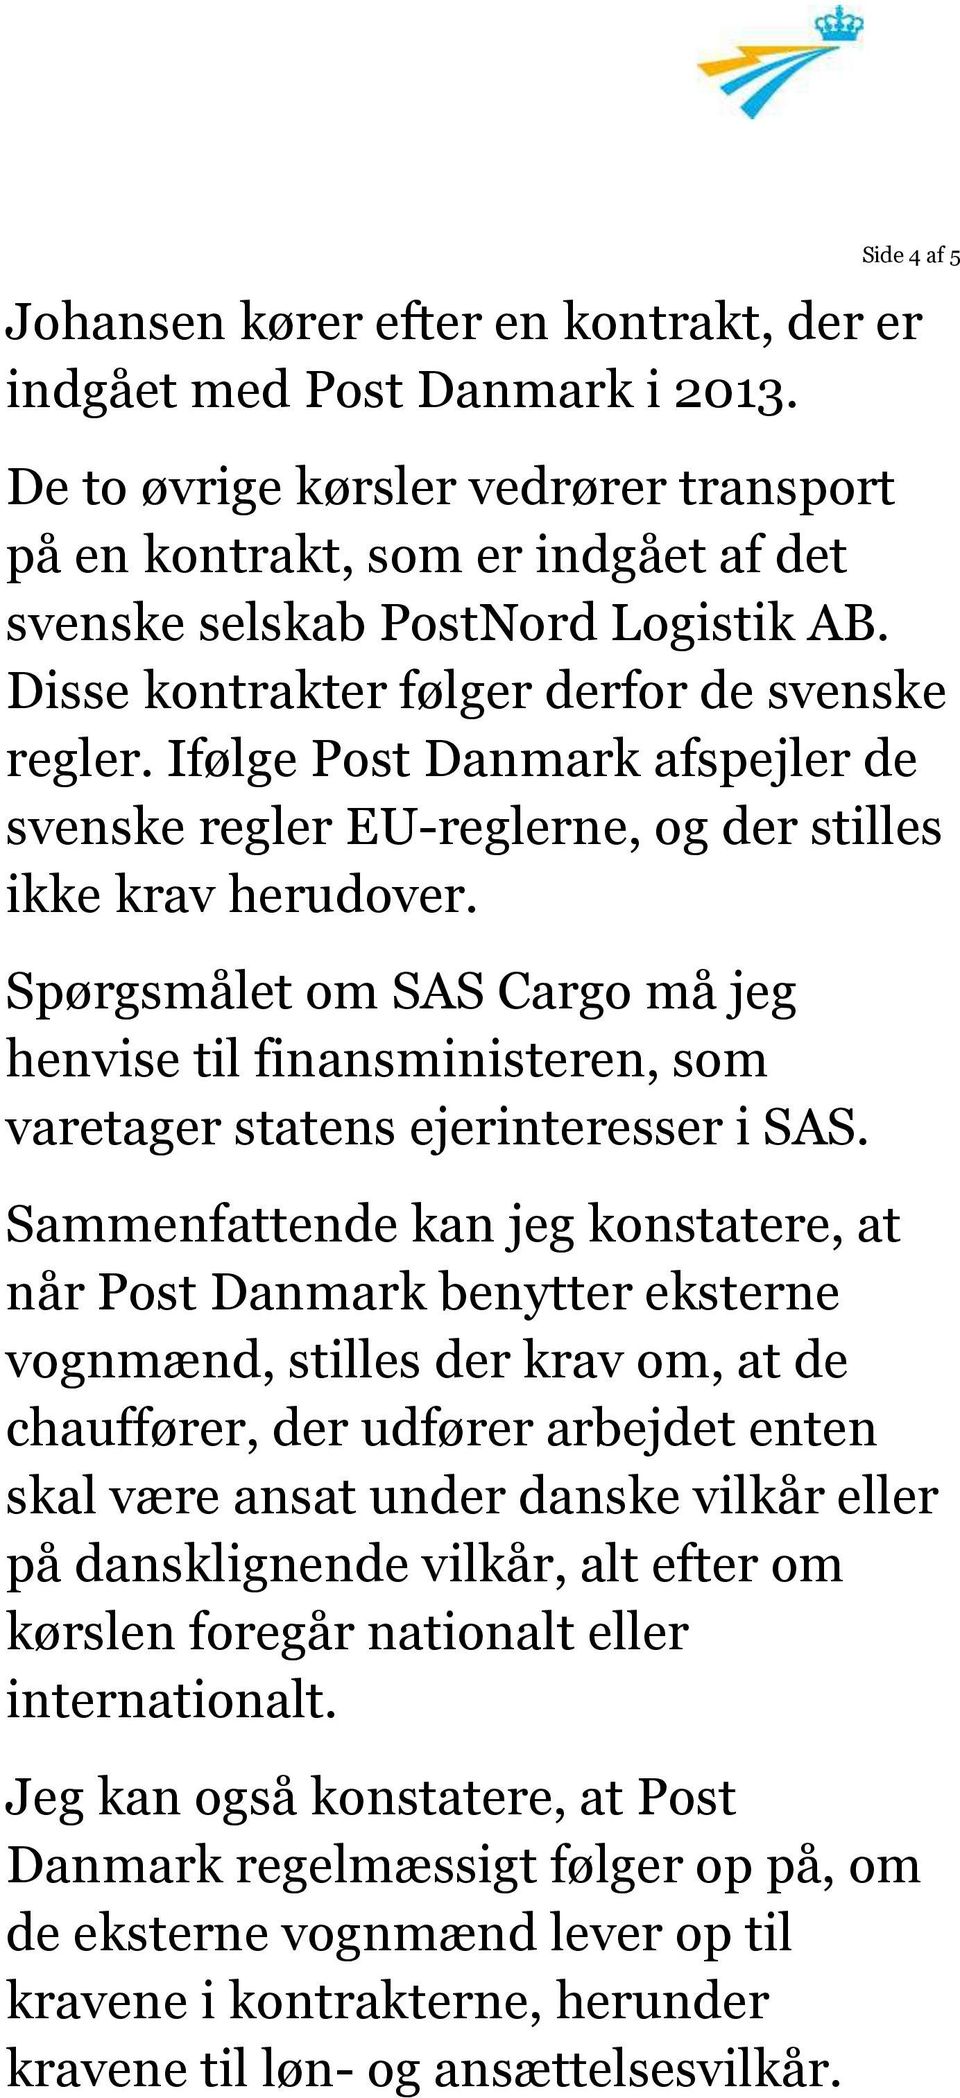 Ifølge Post Danmark afspejler de svenske regler EU-reglerne, og der stilles ikke krav herudover.